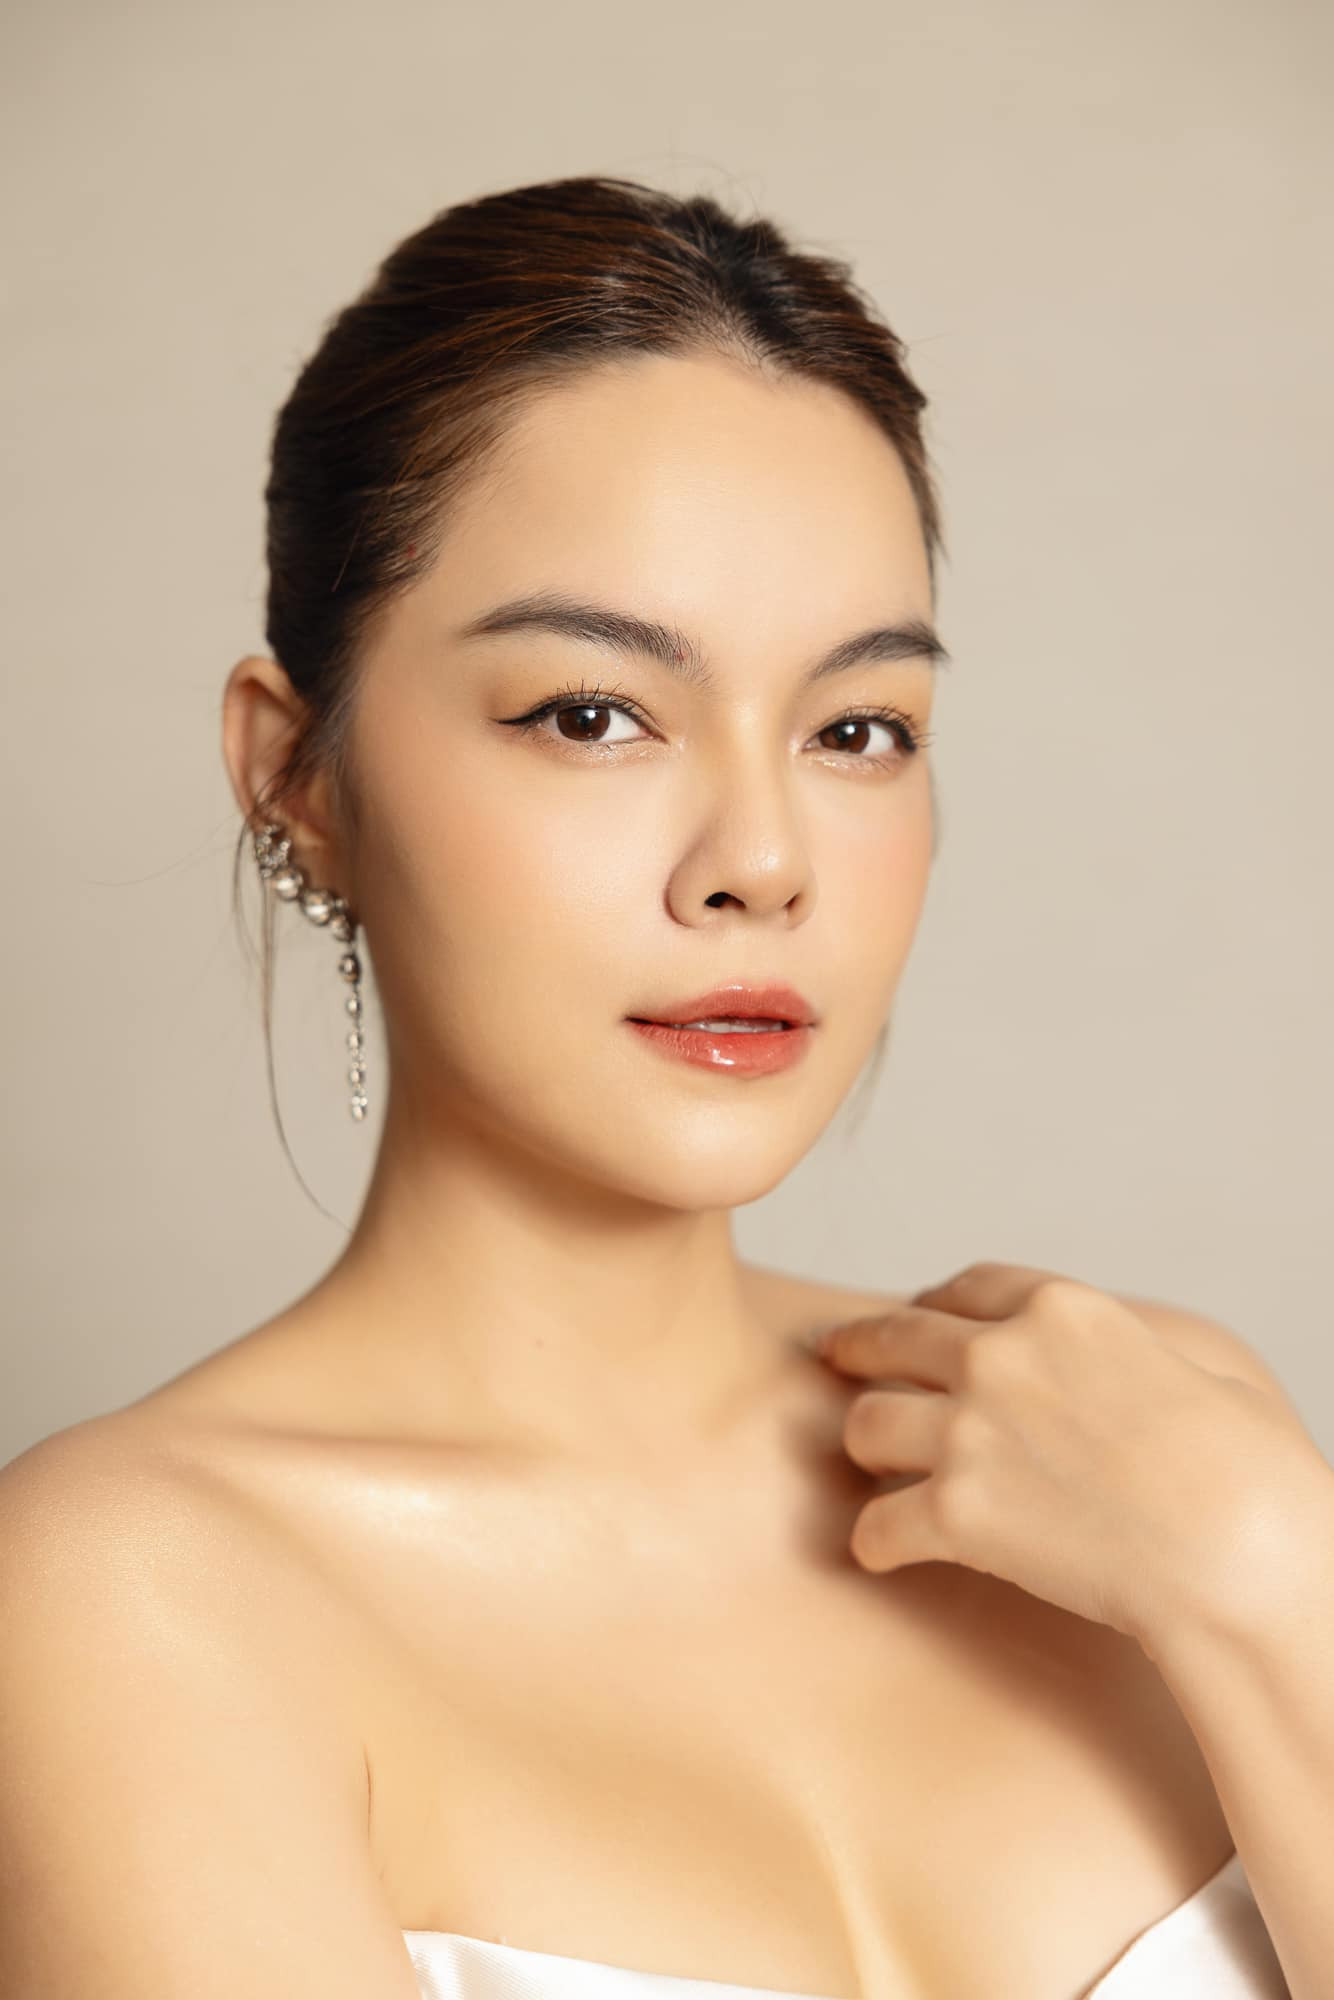 Sao Việt 7/9: Vợ NSND Công Lý, diễn viên Quỳnh Nga ngày càng xinh đẹp